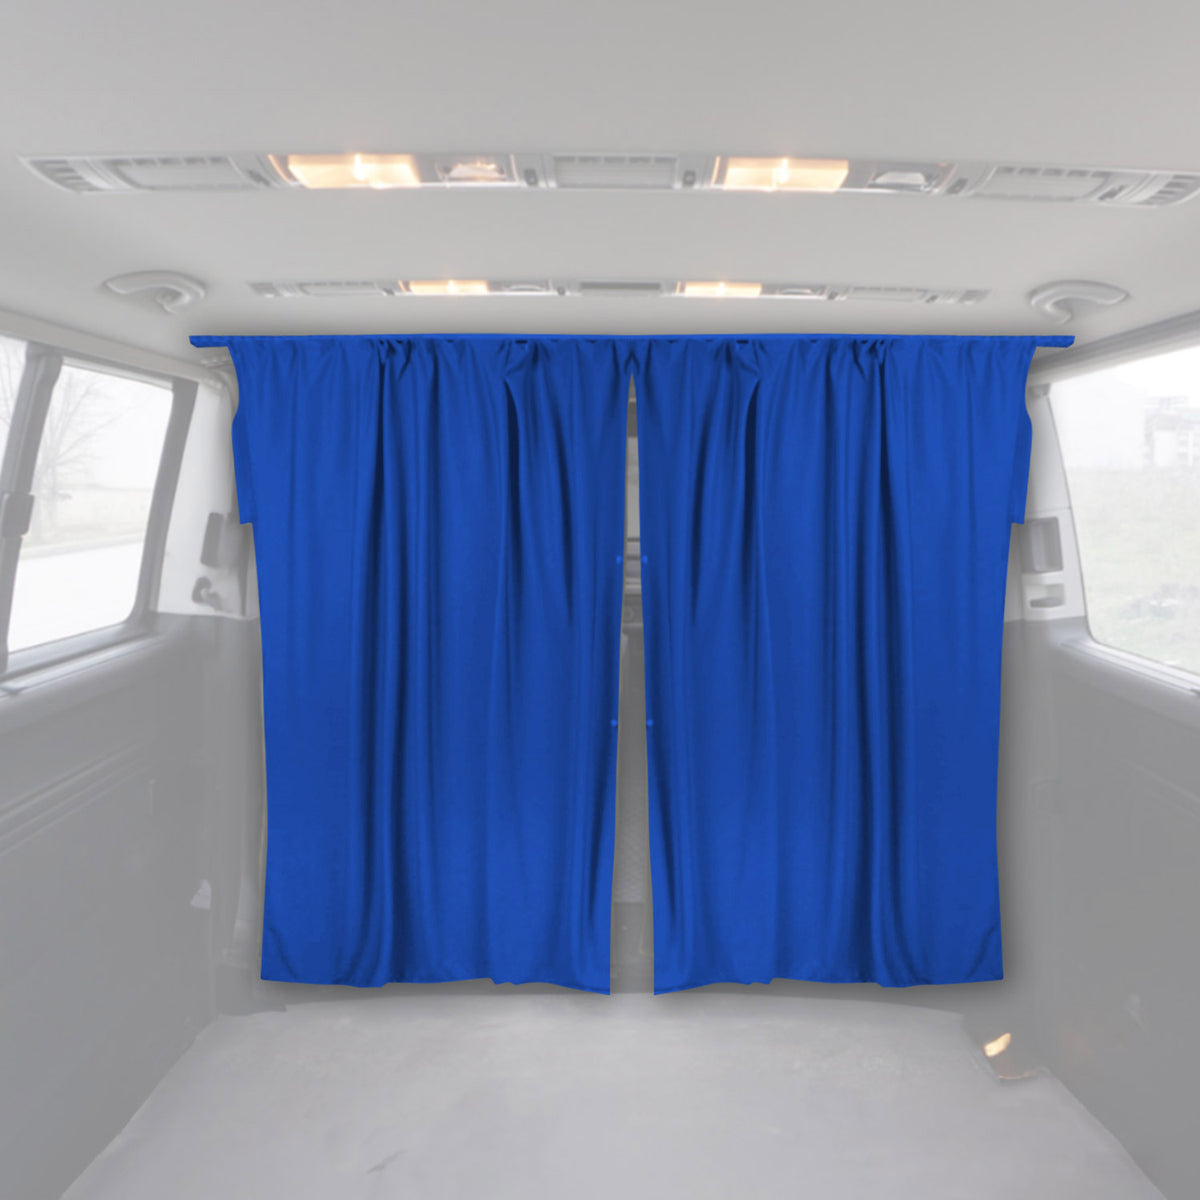 Fahrerhaus Führerhaus Gardinen Sonnenschutz für VW T5 L1 L2 Blau 2tlg